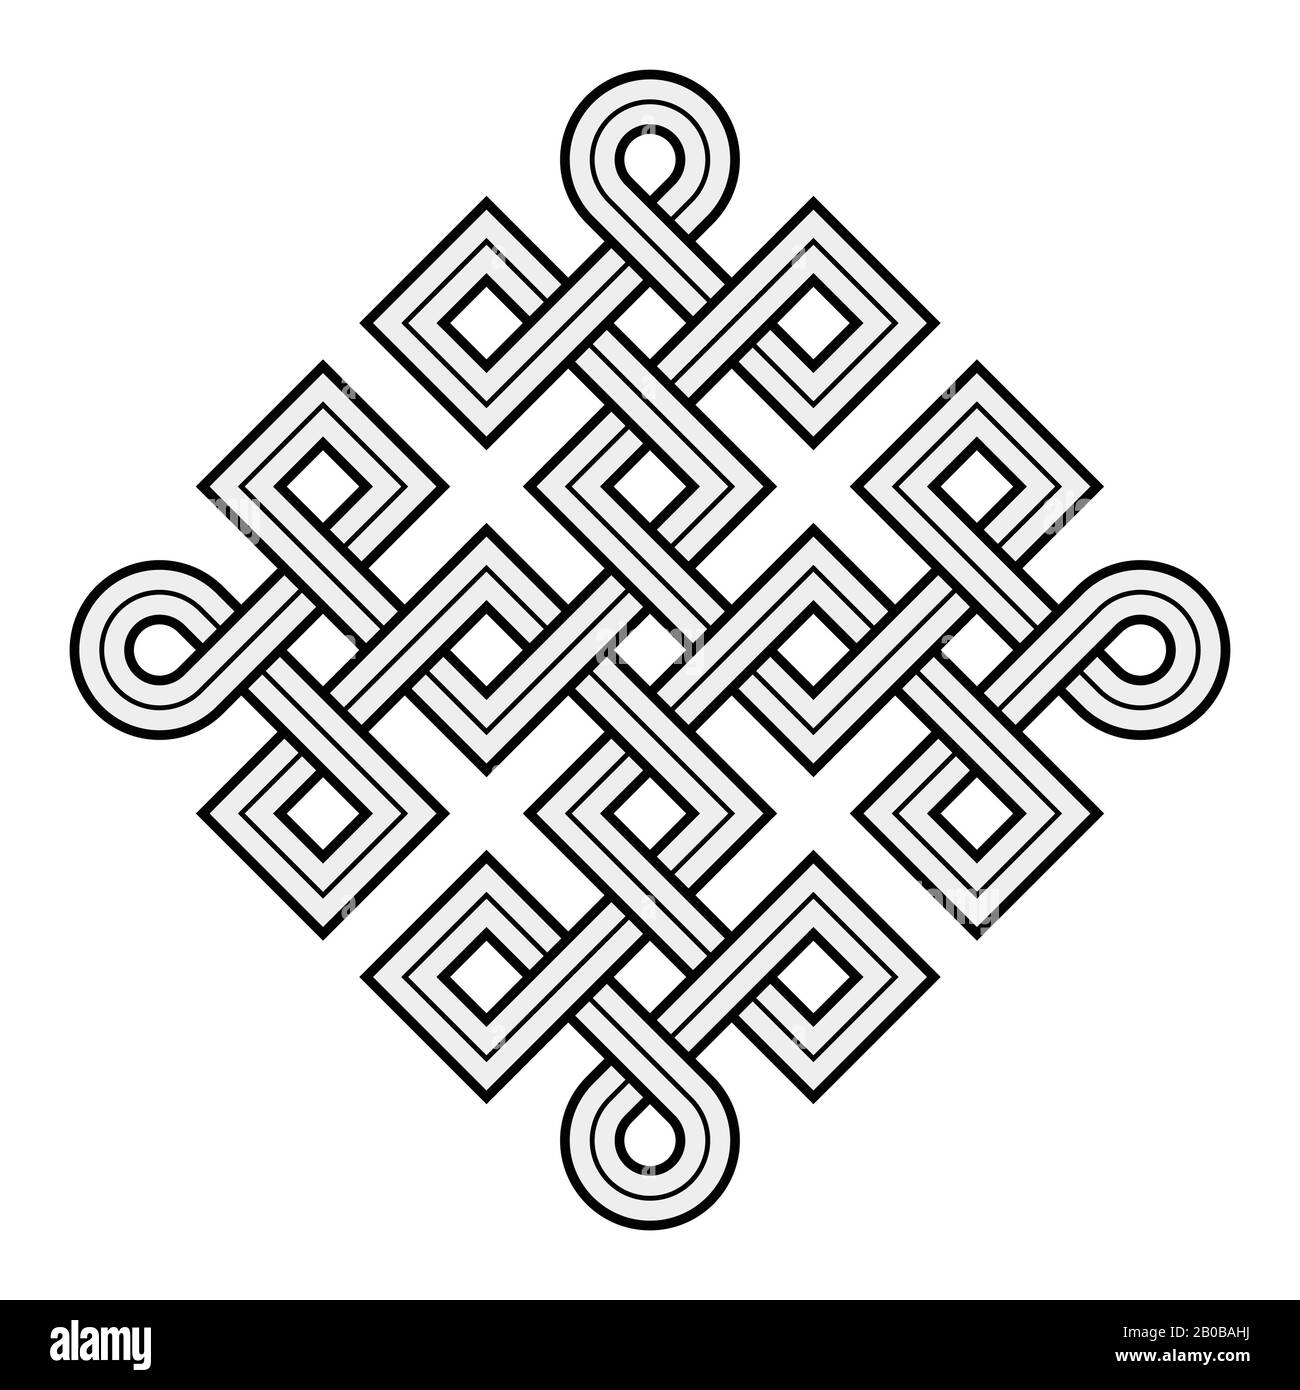 Illustrazione vettoriale di un nodo Vichingo nordico - mistico, simbolo decorativo con linee Incise oro intrecciate. Linee, incisione e riempimento colore ordinatamente Illustrazione Vettoriale